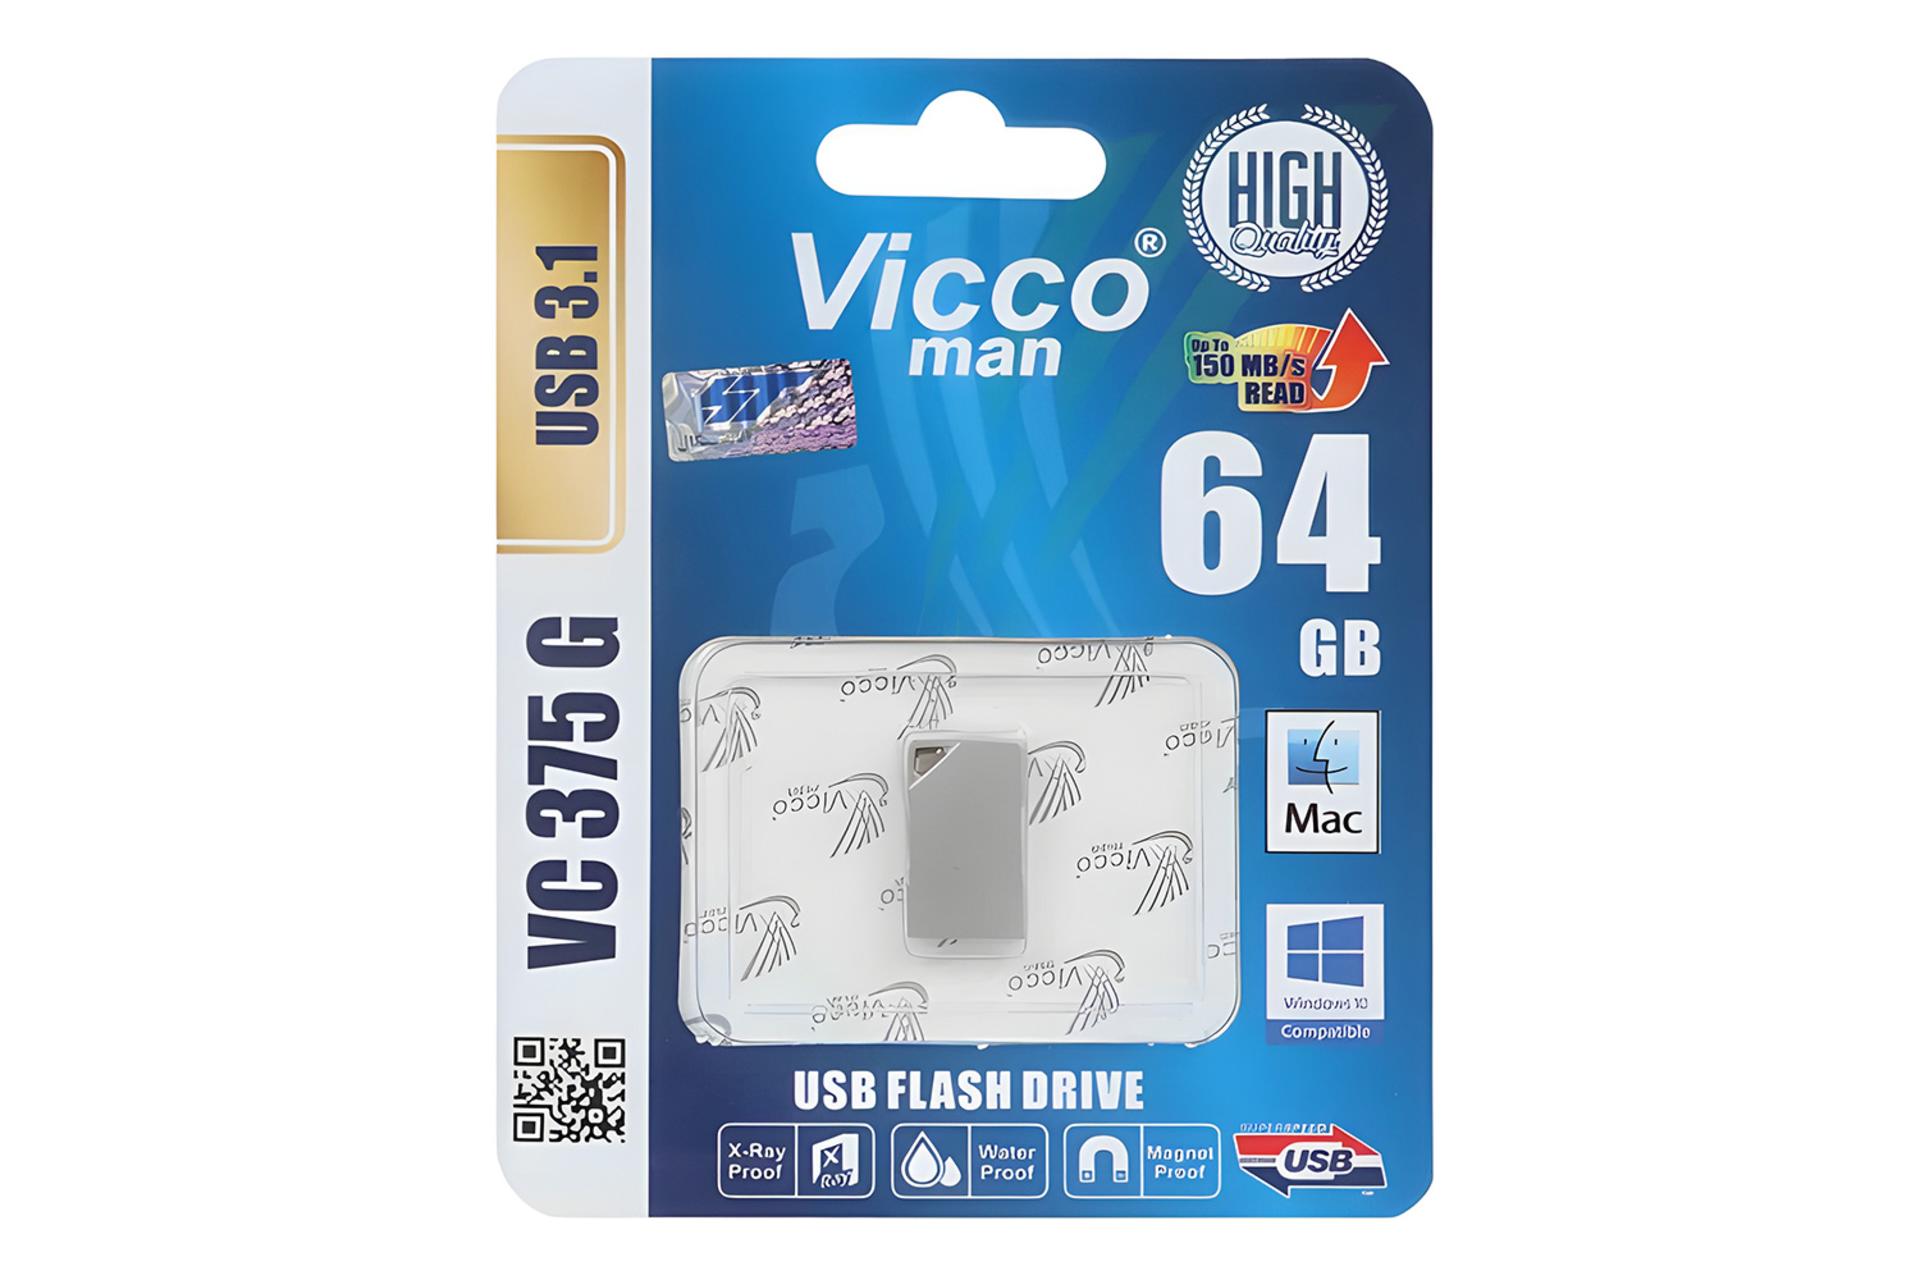 جعبه فلش مموری ویکومن Viccoman VC375 G 64GB